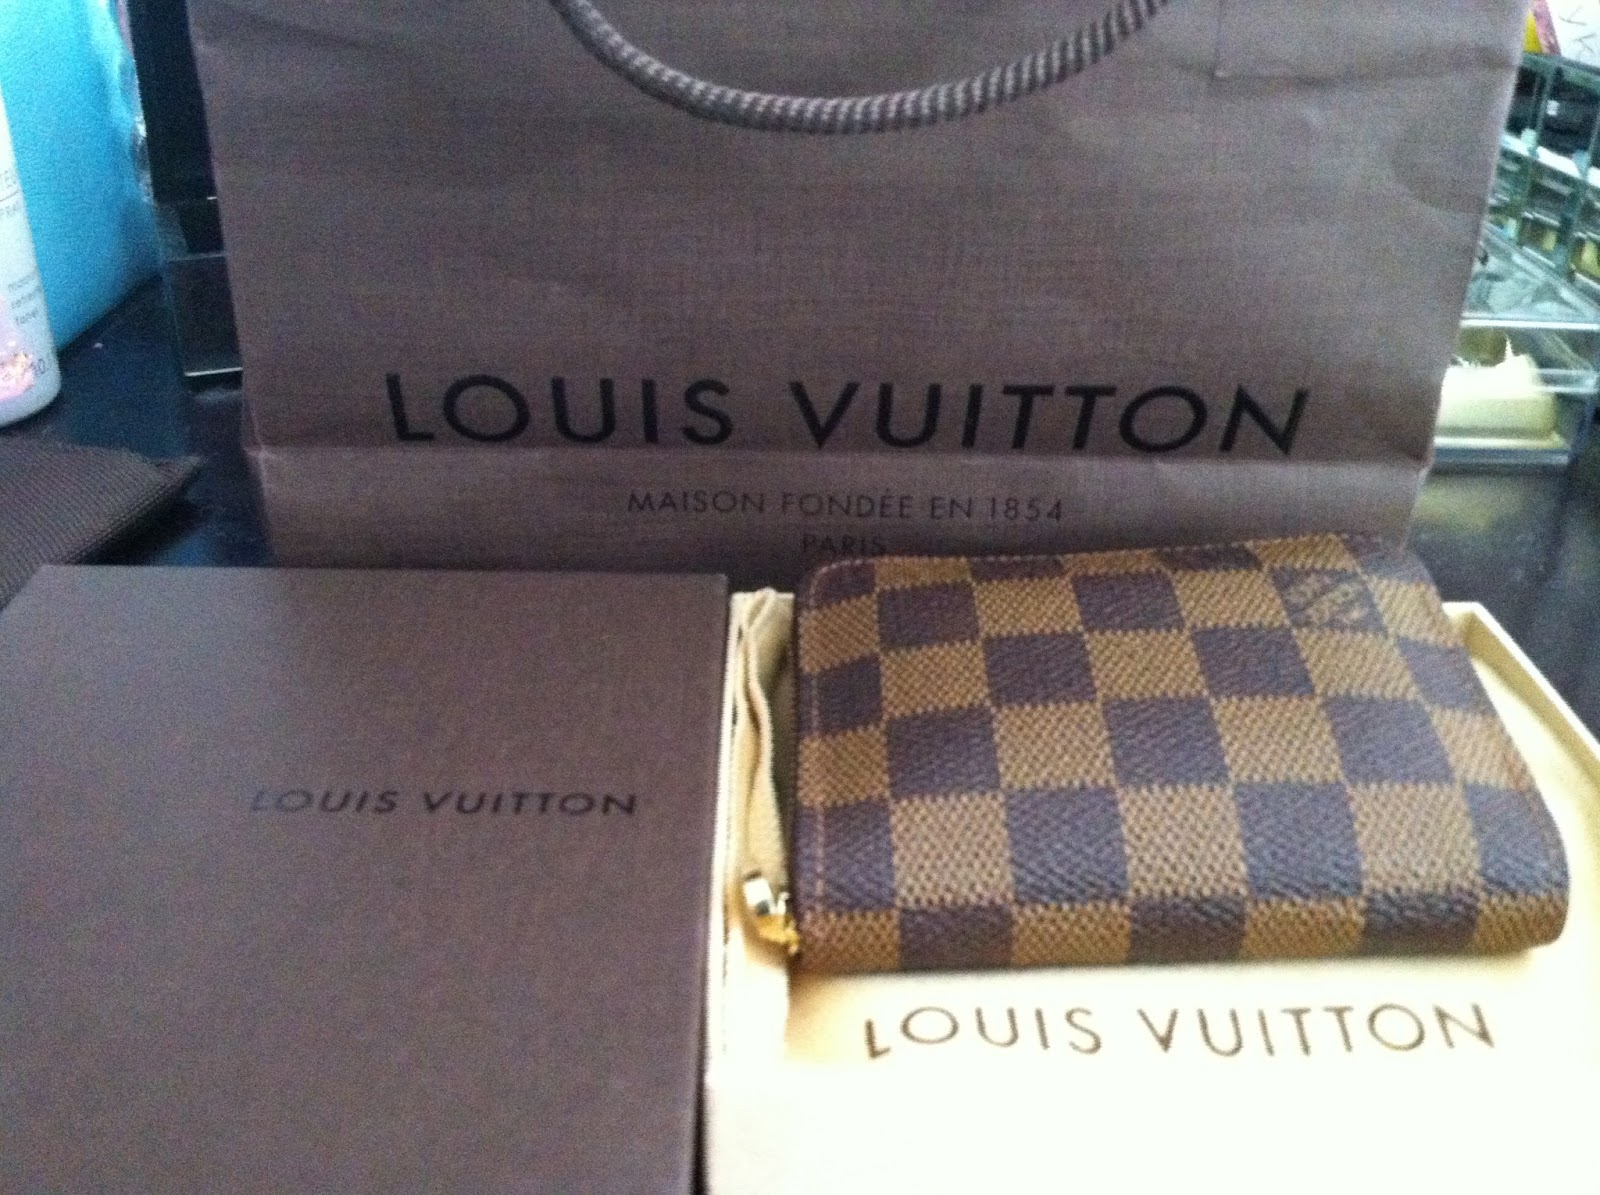 Louis Vuitton Zippy Wallet Review - Curls and Contours